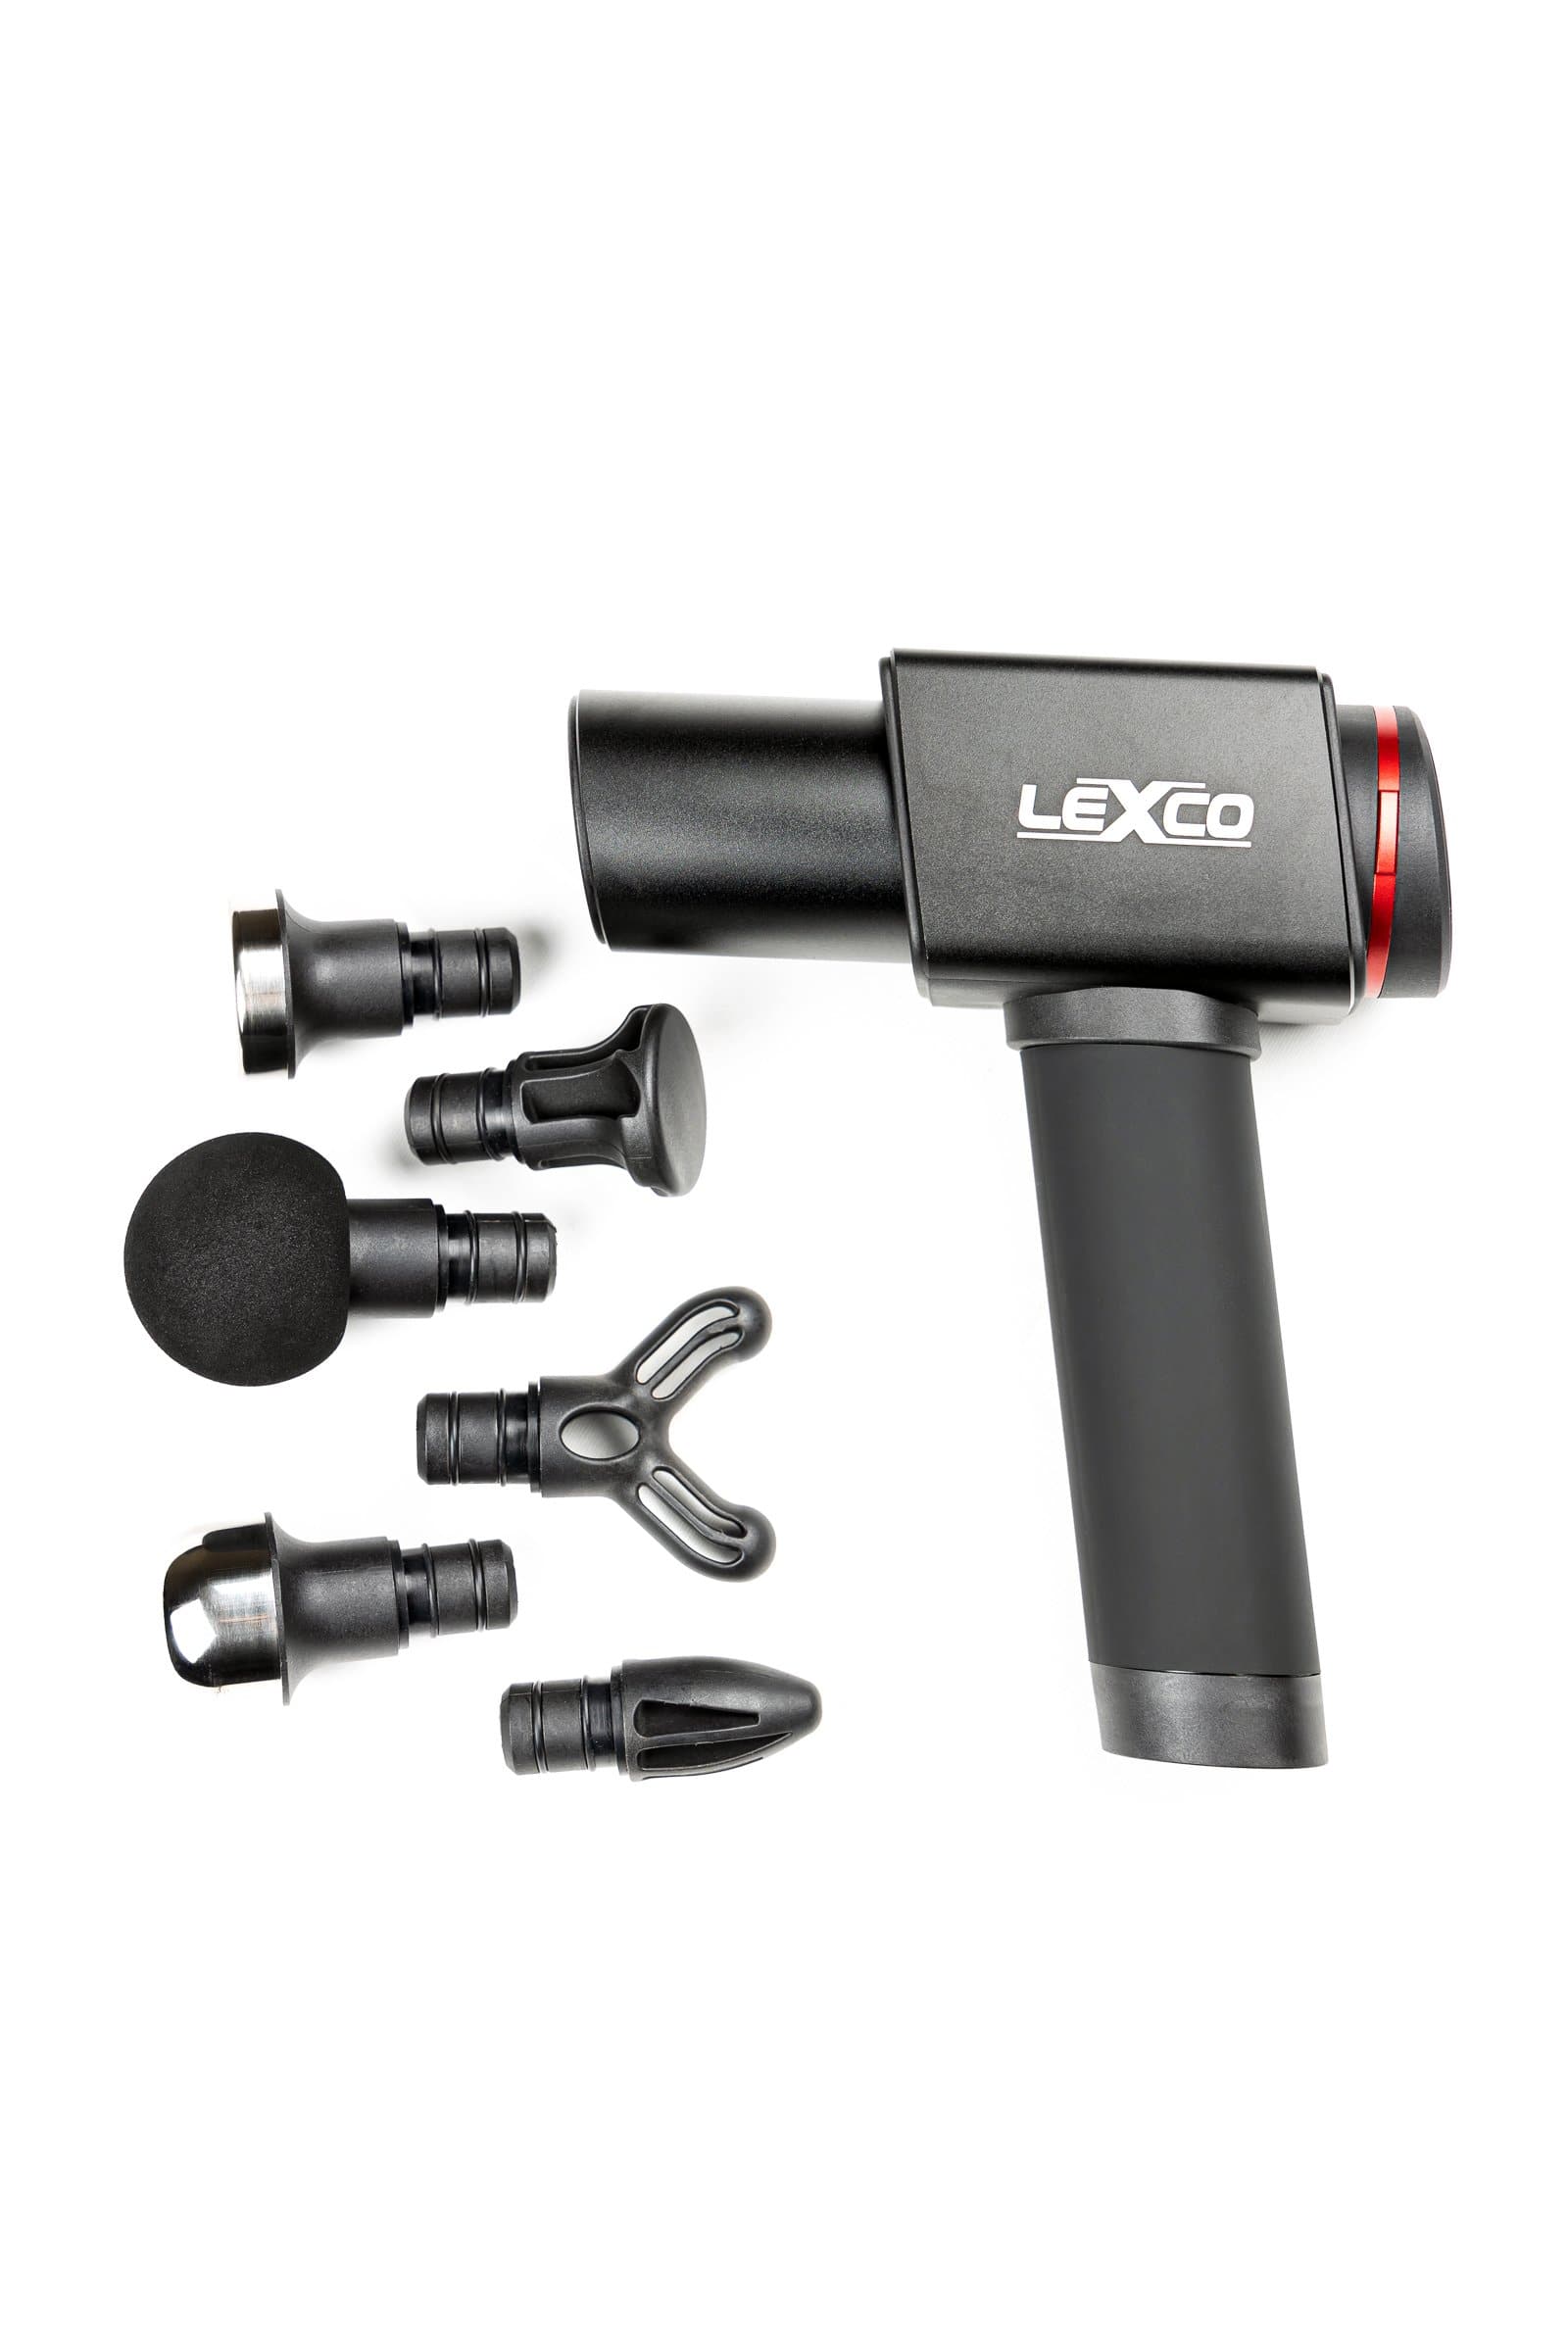 Lexco Pro Massage Gun